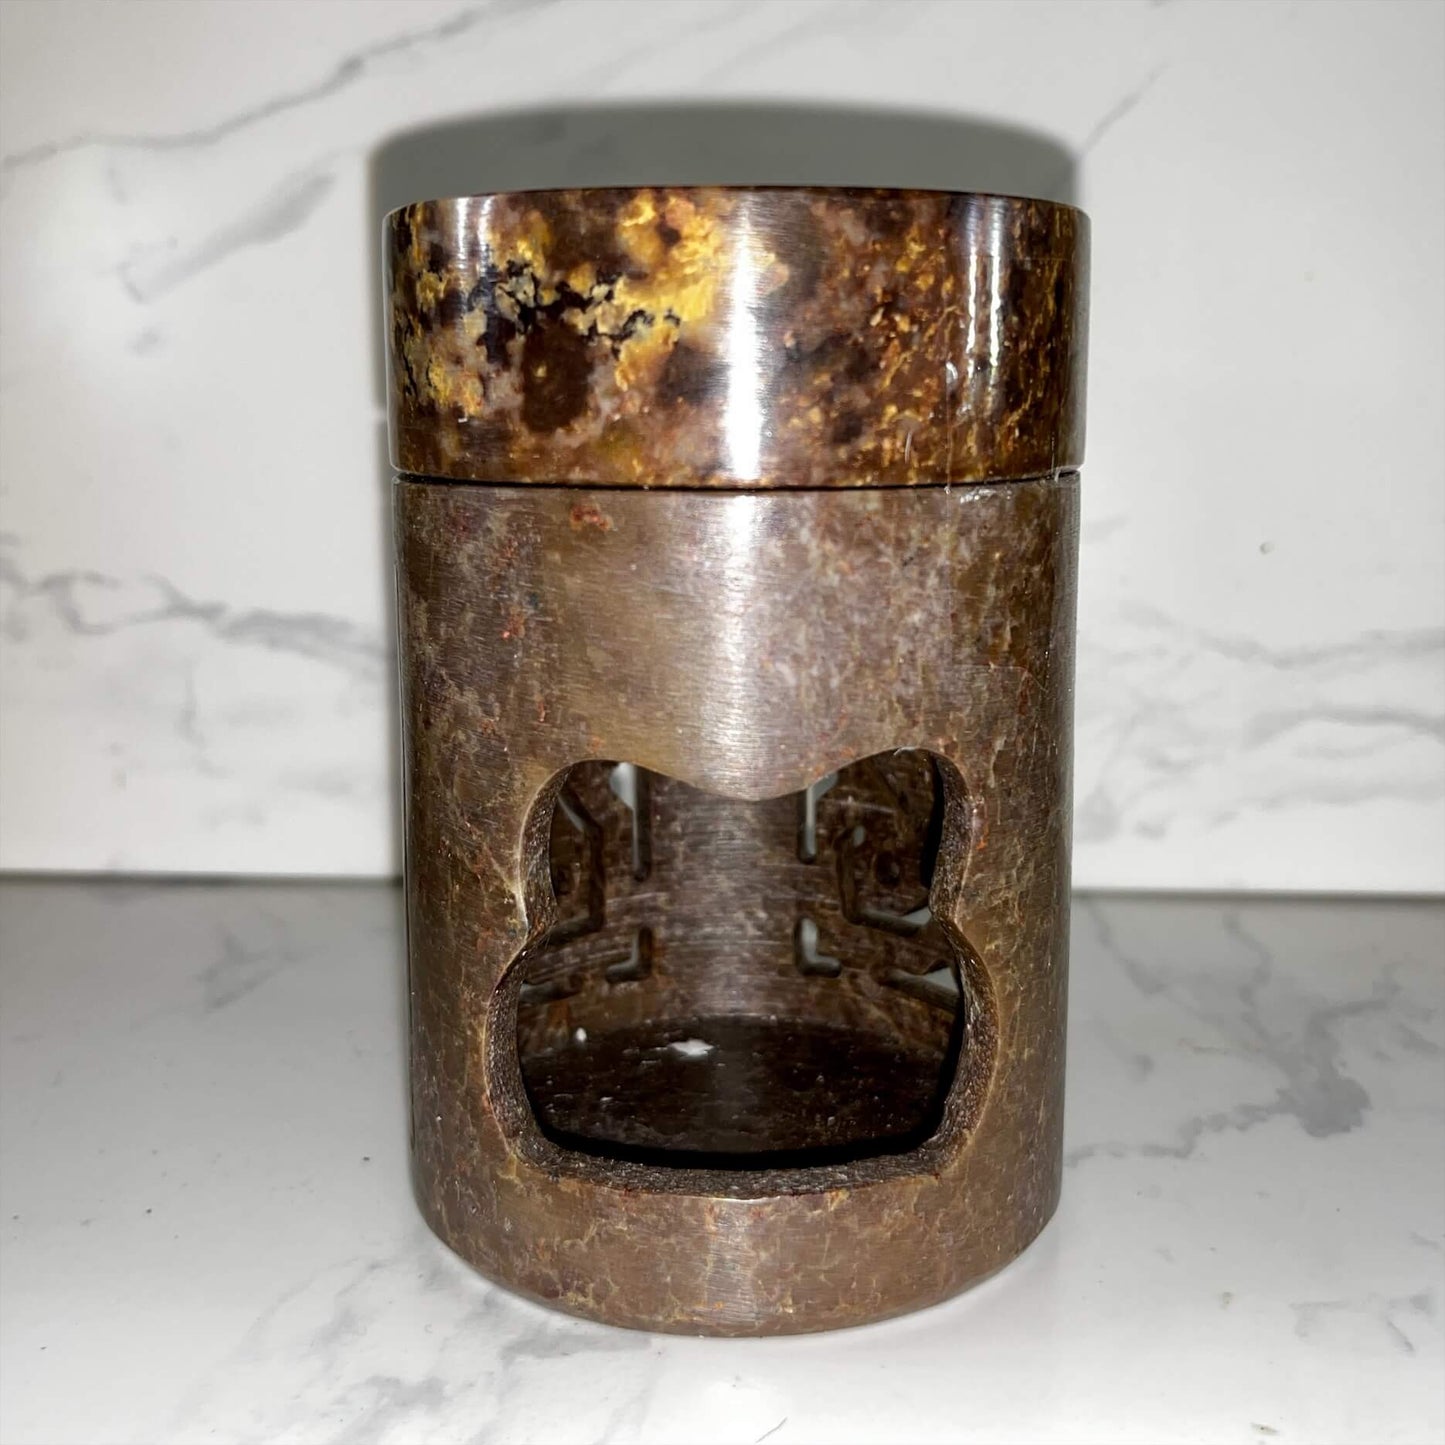 Soap Stone oil warmer